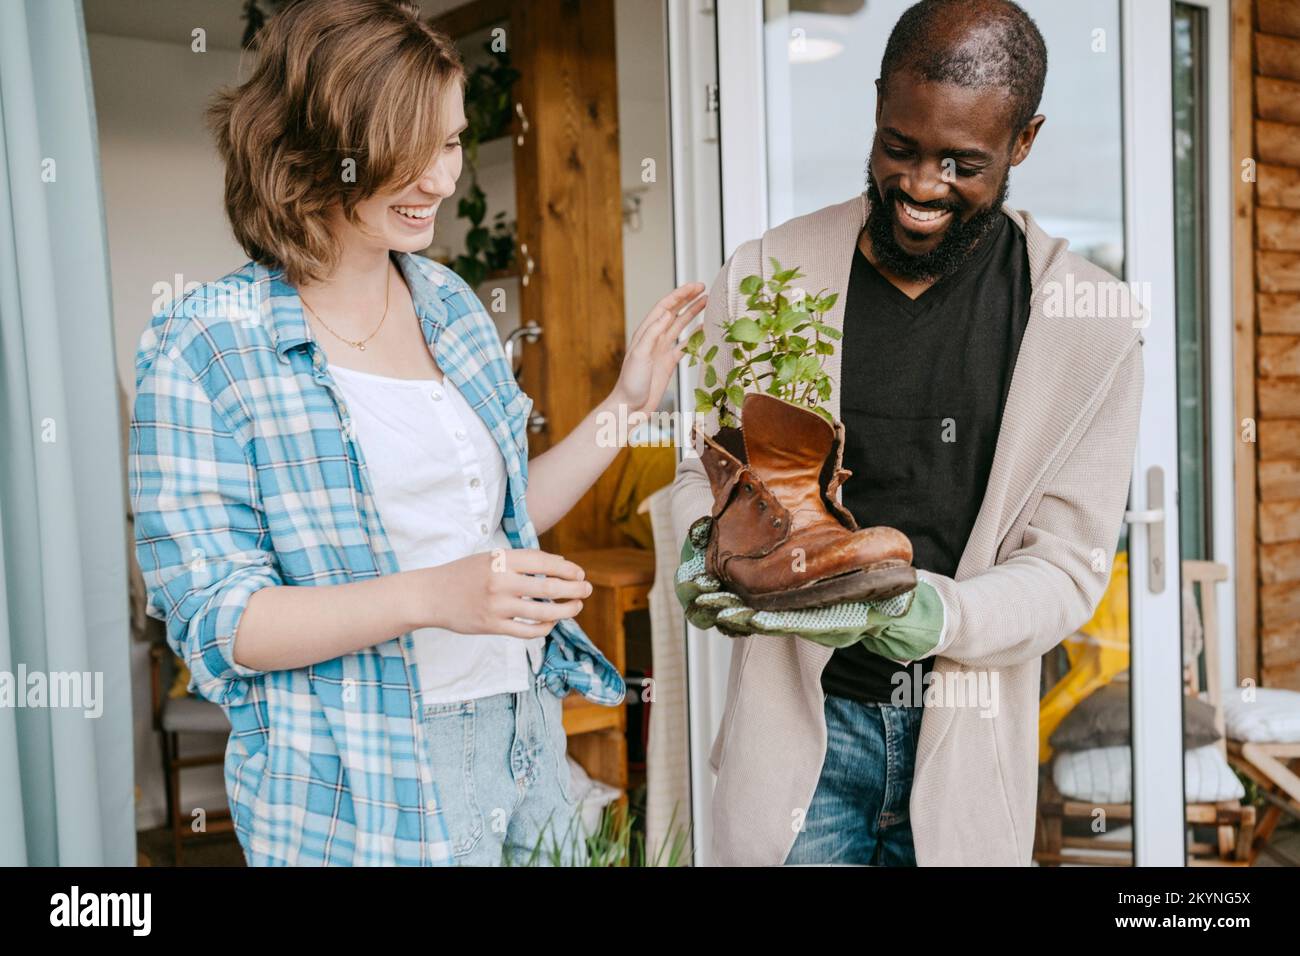 Heureux homme mature montrant plante en cuir bottes à la femme tout en se tenant sur le porche Banque D'Images